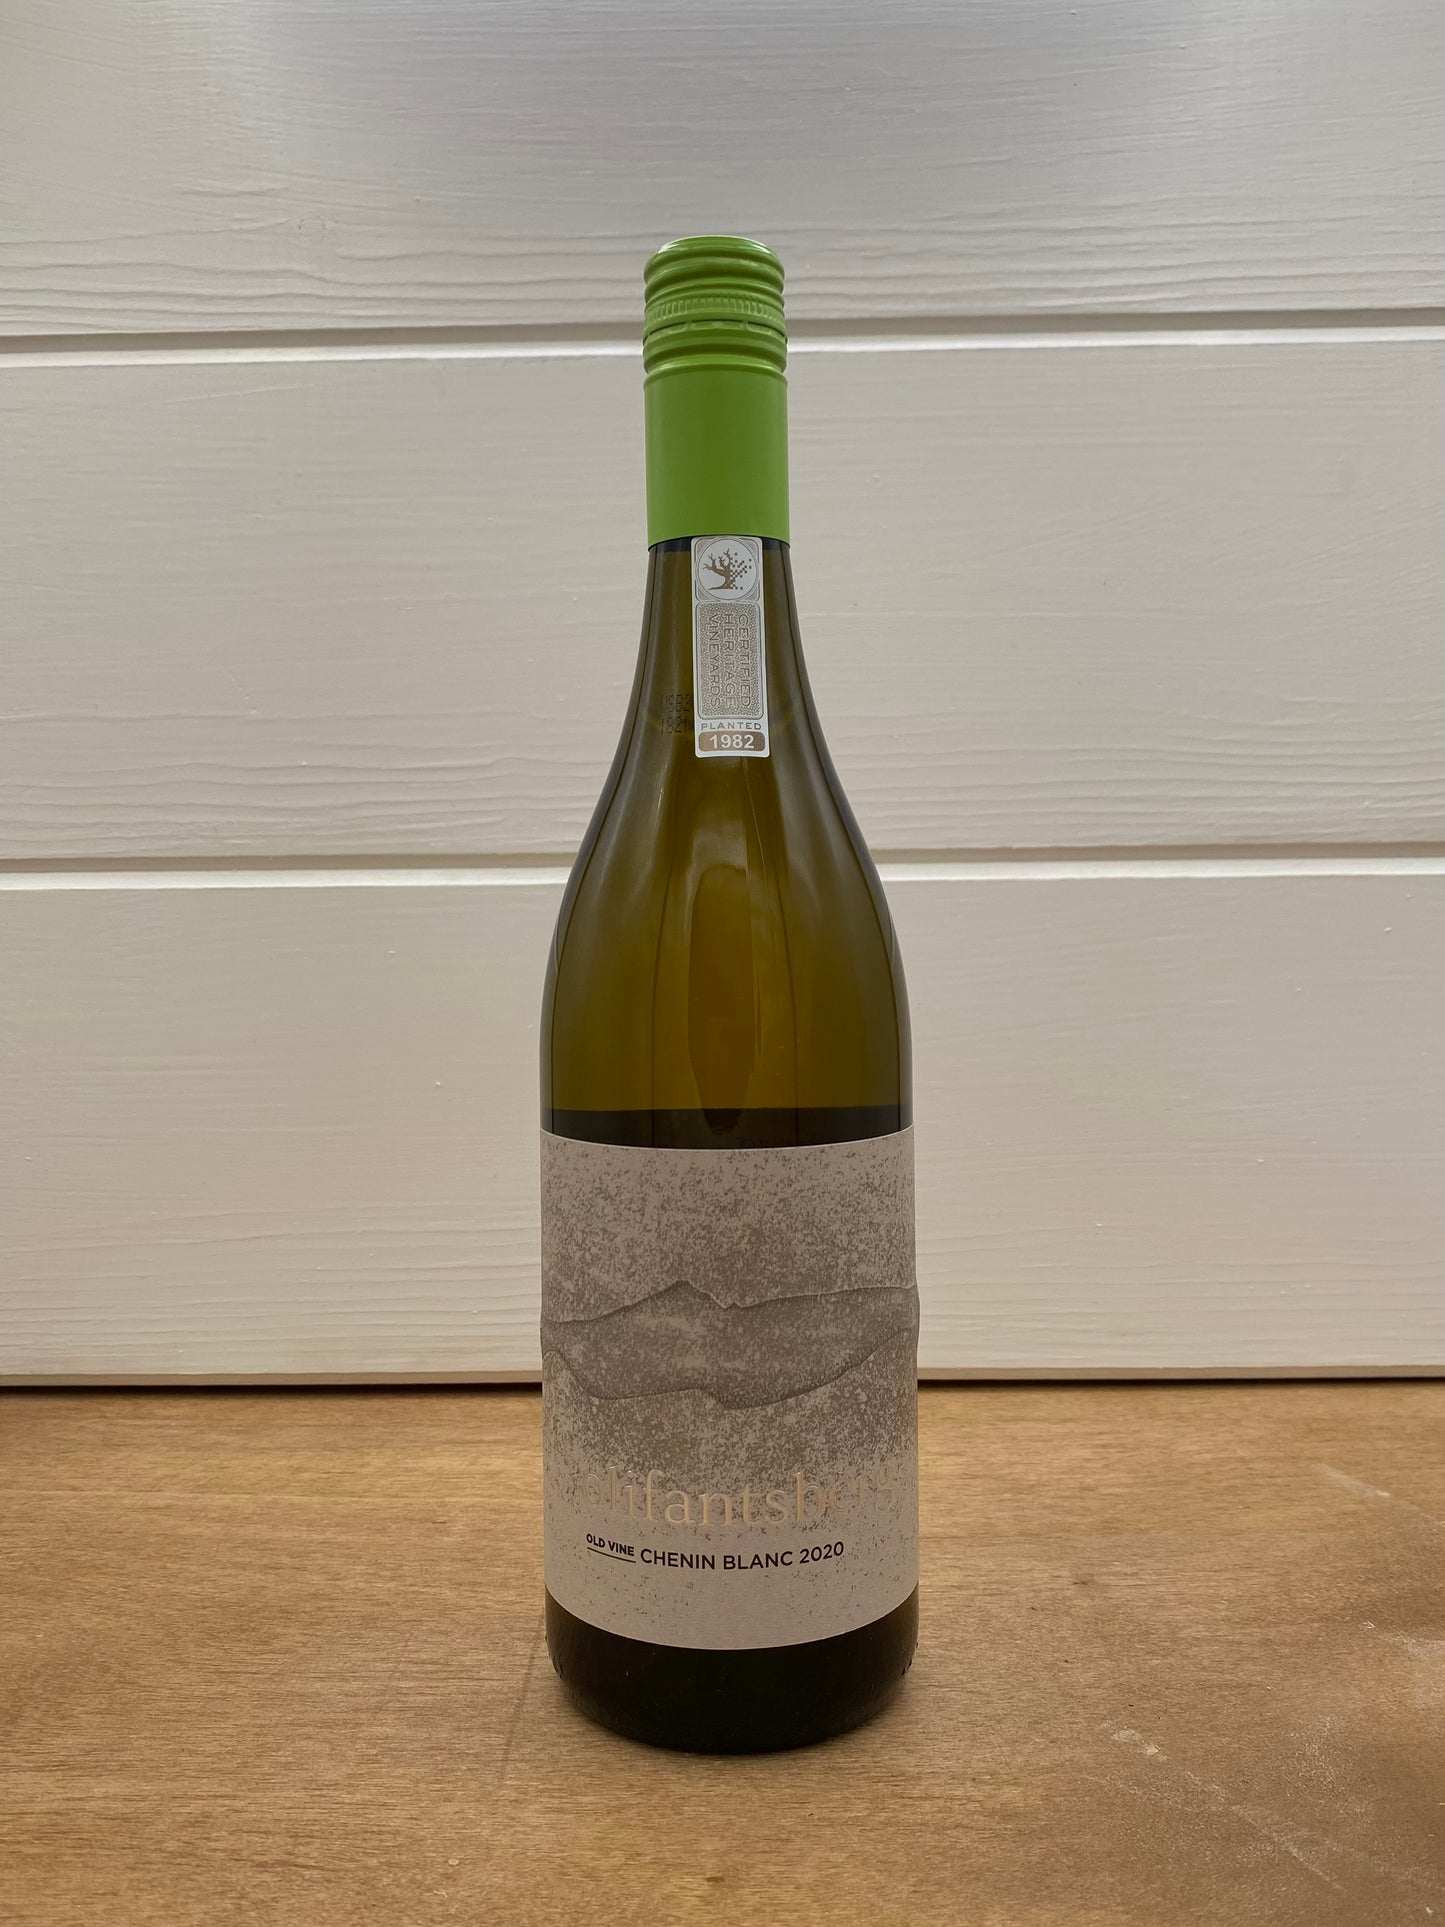 Olifantsberg Old Vine Chenin Blanc 2020